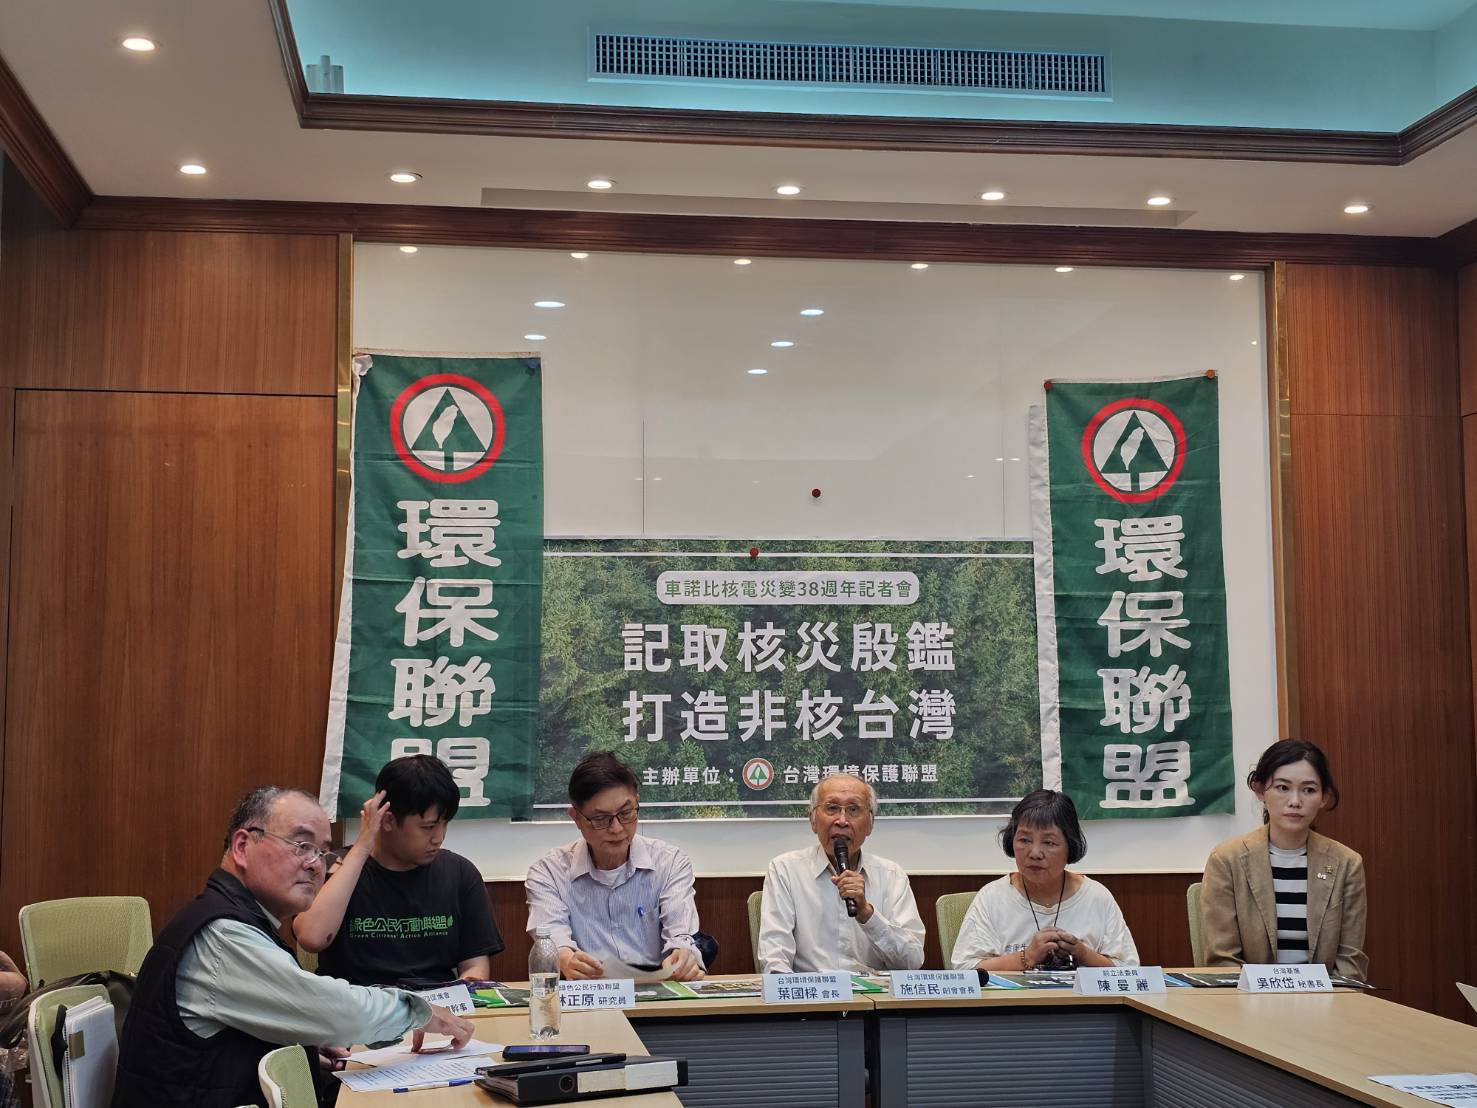 今天是车诺比核灾事件38周年，台湾环境保护联盟邀集环保团体、关心反核议题的政党一同于立法院召开记者会，让社会大众反思核灾造成的影响，并重申反对老旧核电厂延役。记者李柏澔／摄影